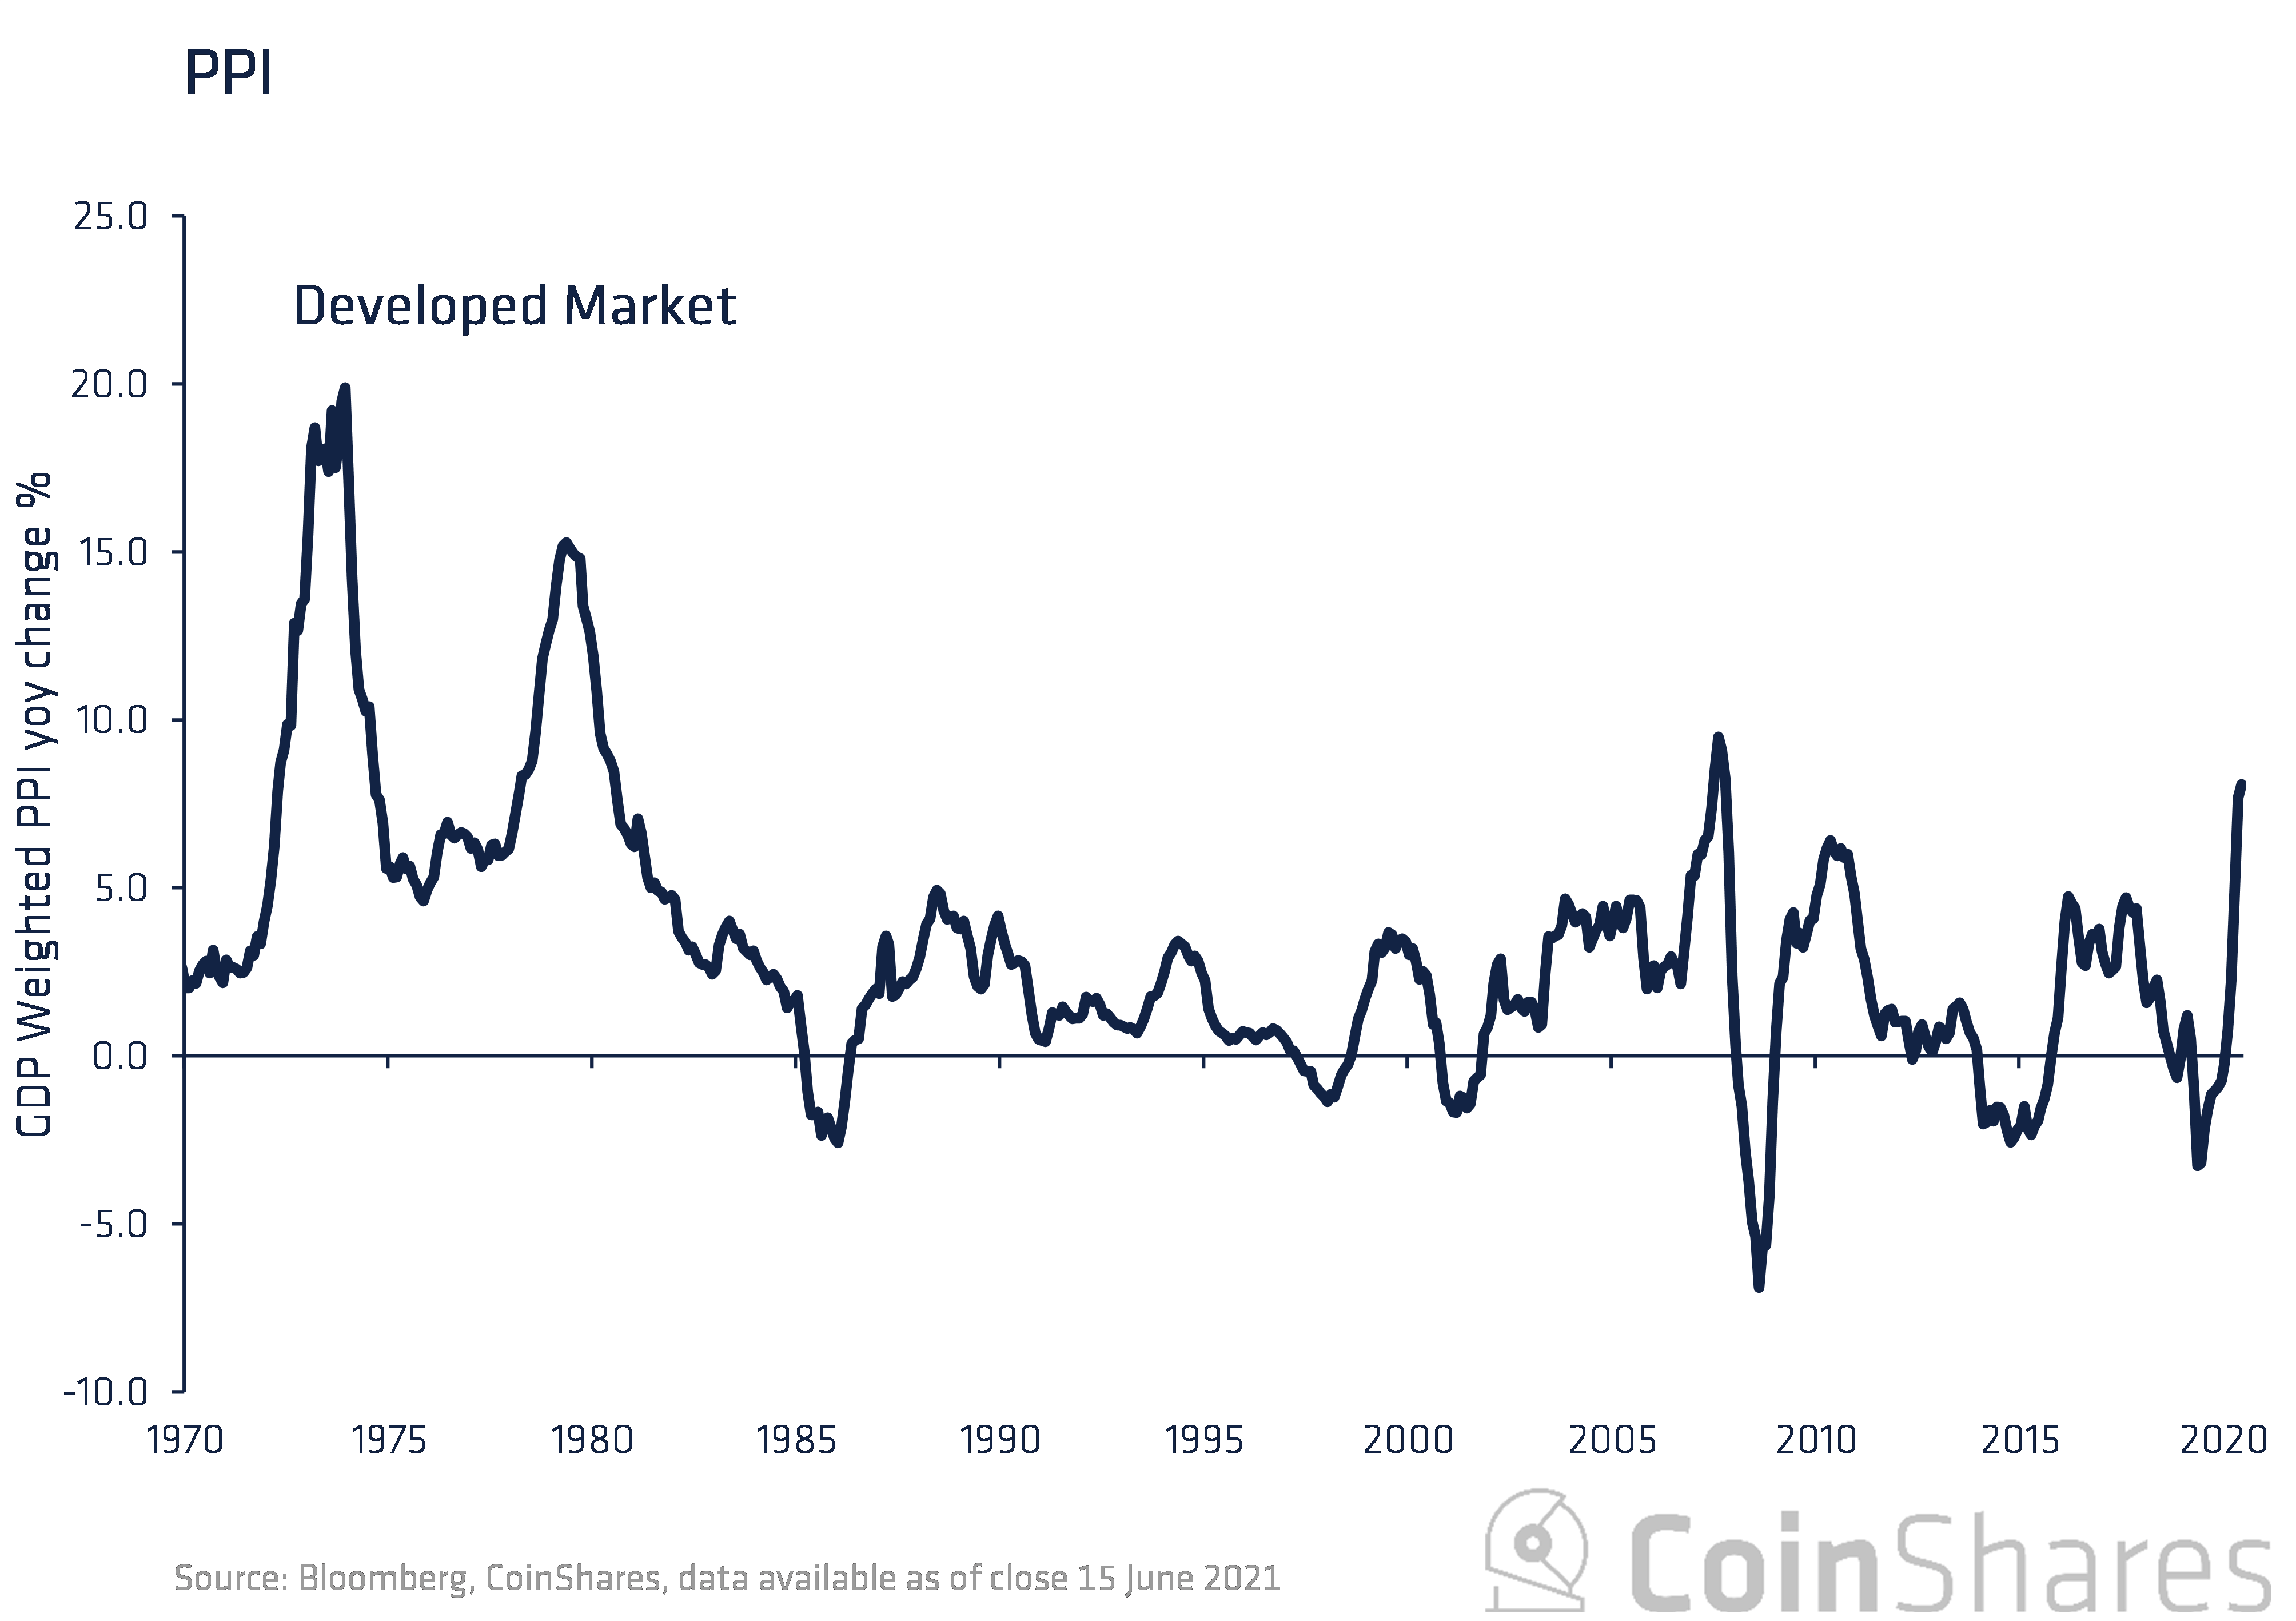 tasso di inflazione bitcoin)